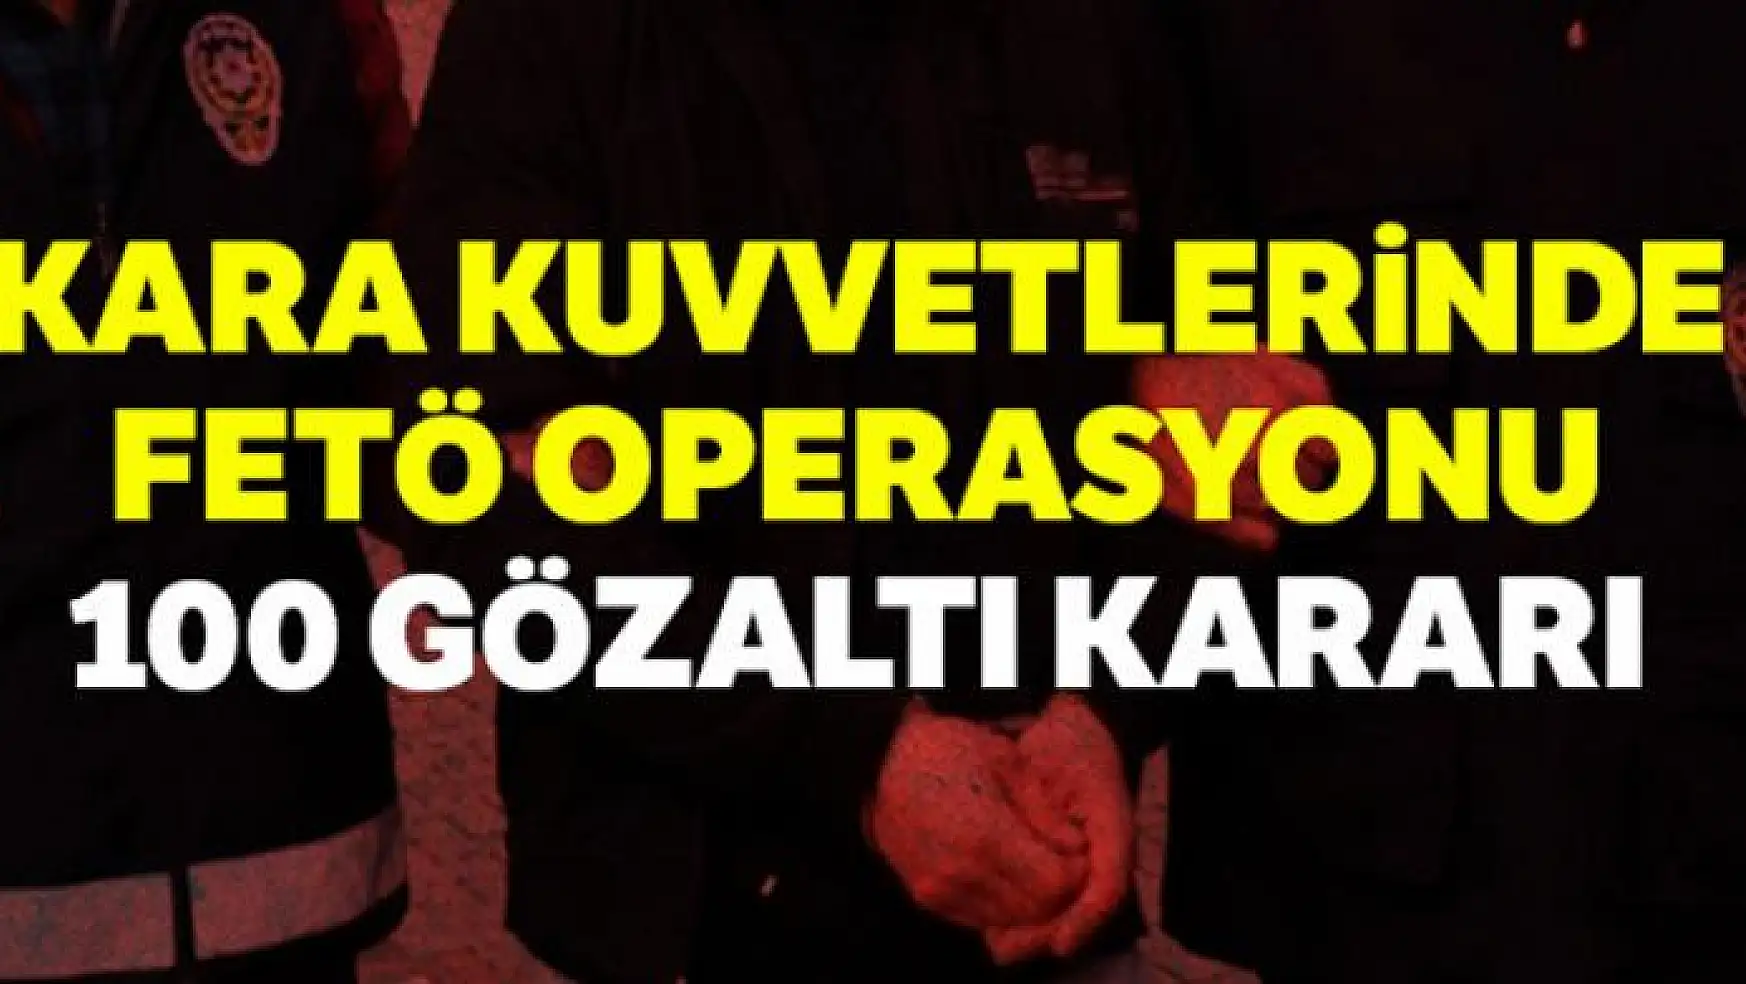 Kara Kuvvetlerinde FETÖ operasyonu: 100 gözaltı kararı